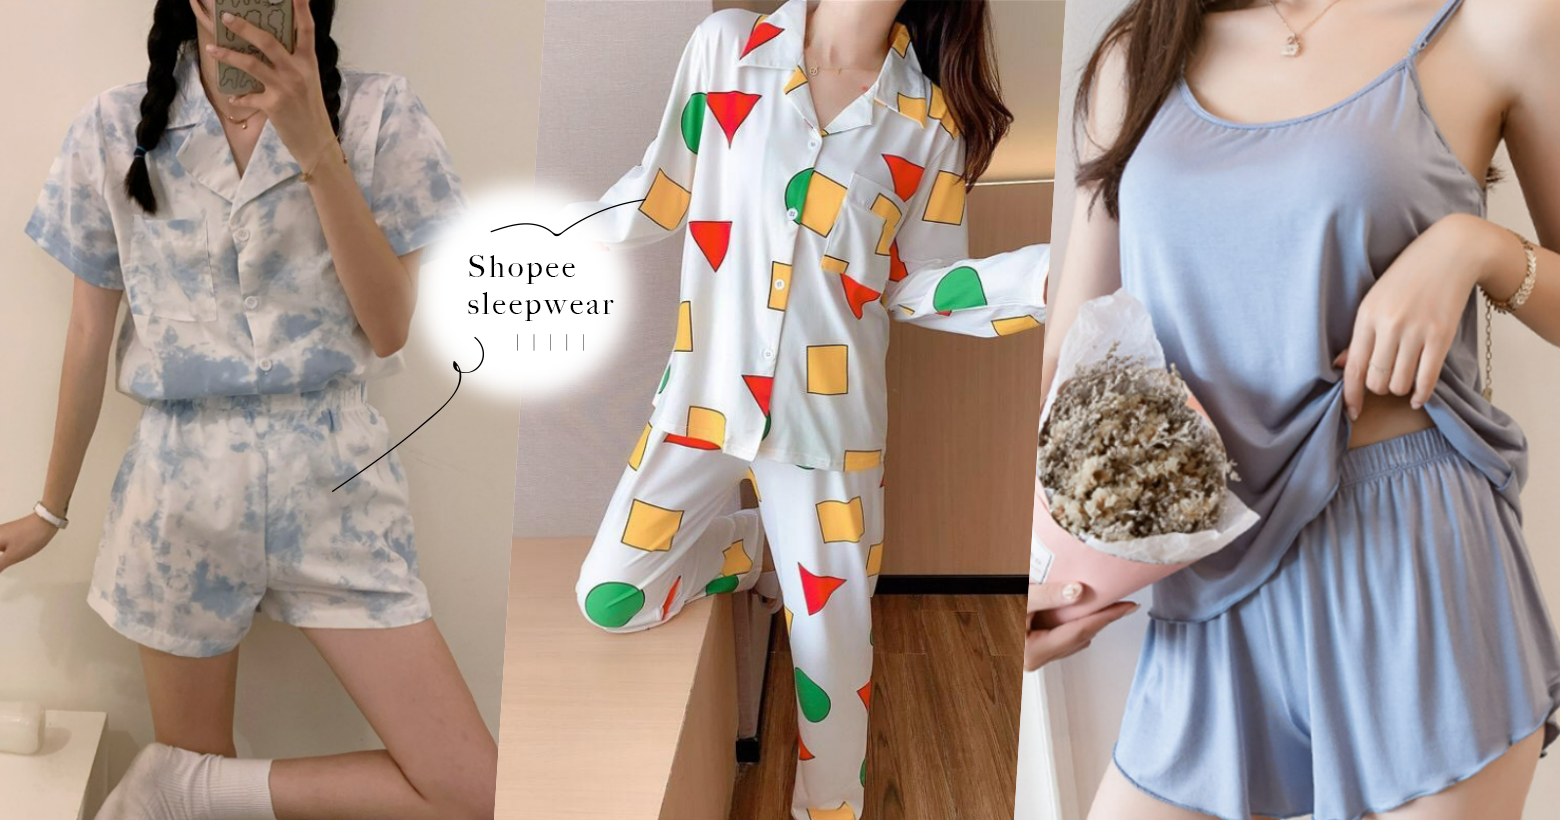 就算是睡觉也要有仪式感！Shopee 5家「居家睡衣推荐」， 最低RM7就能入手质感睡衣！